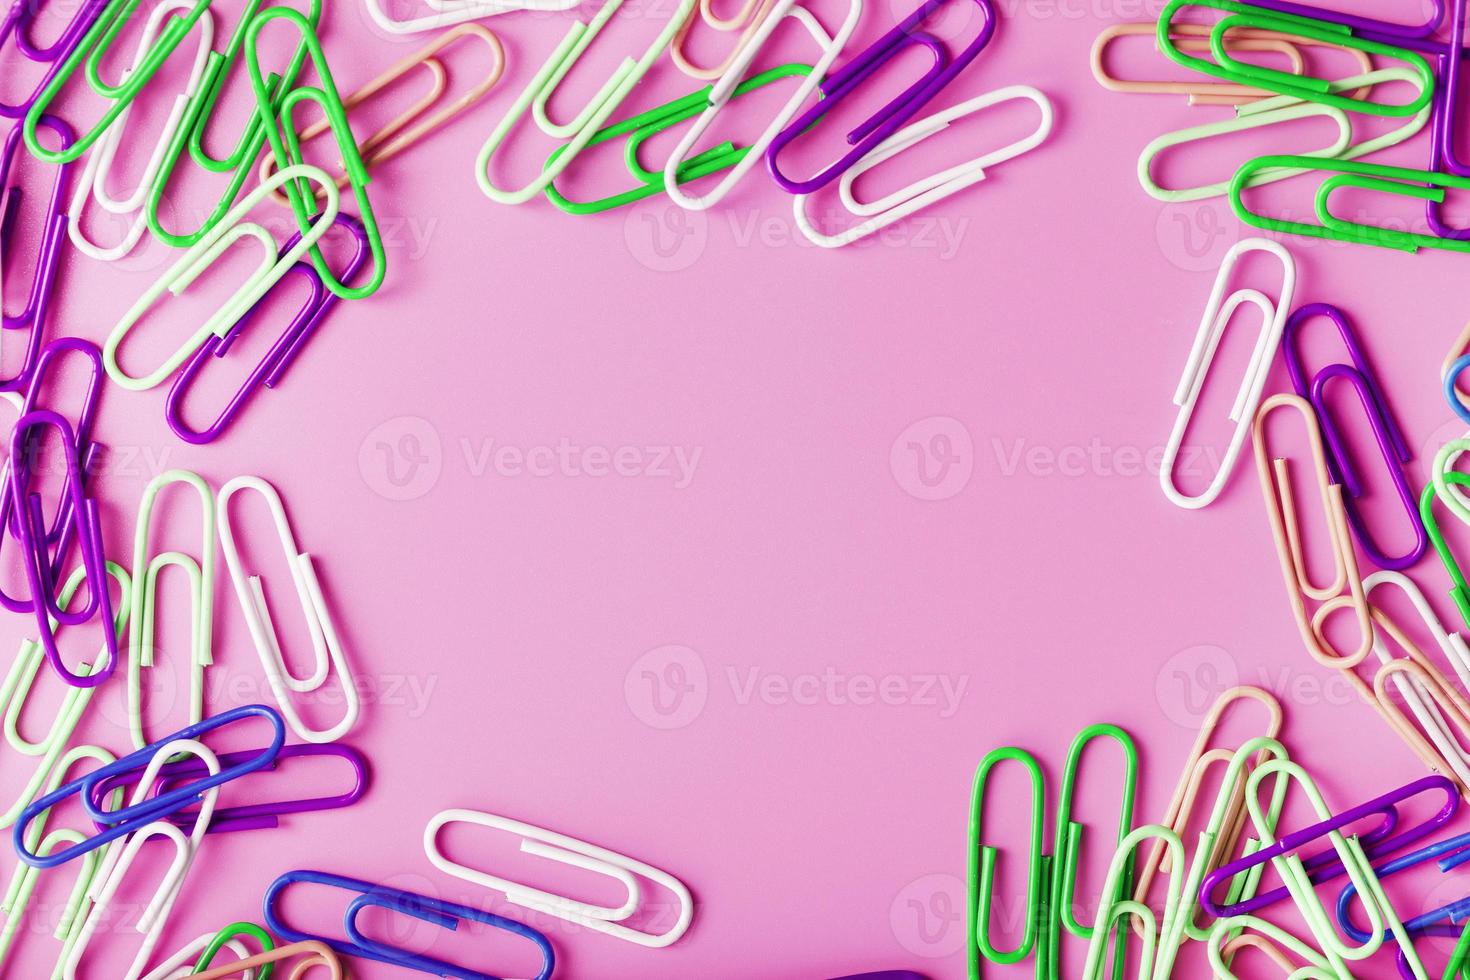 clipes de papel rzhivtkzhtsrbt multicoloridos espalhados em um fundo rosa foto